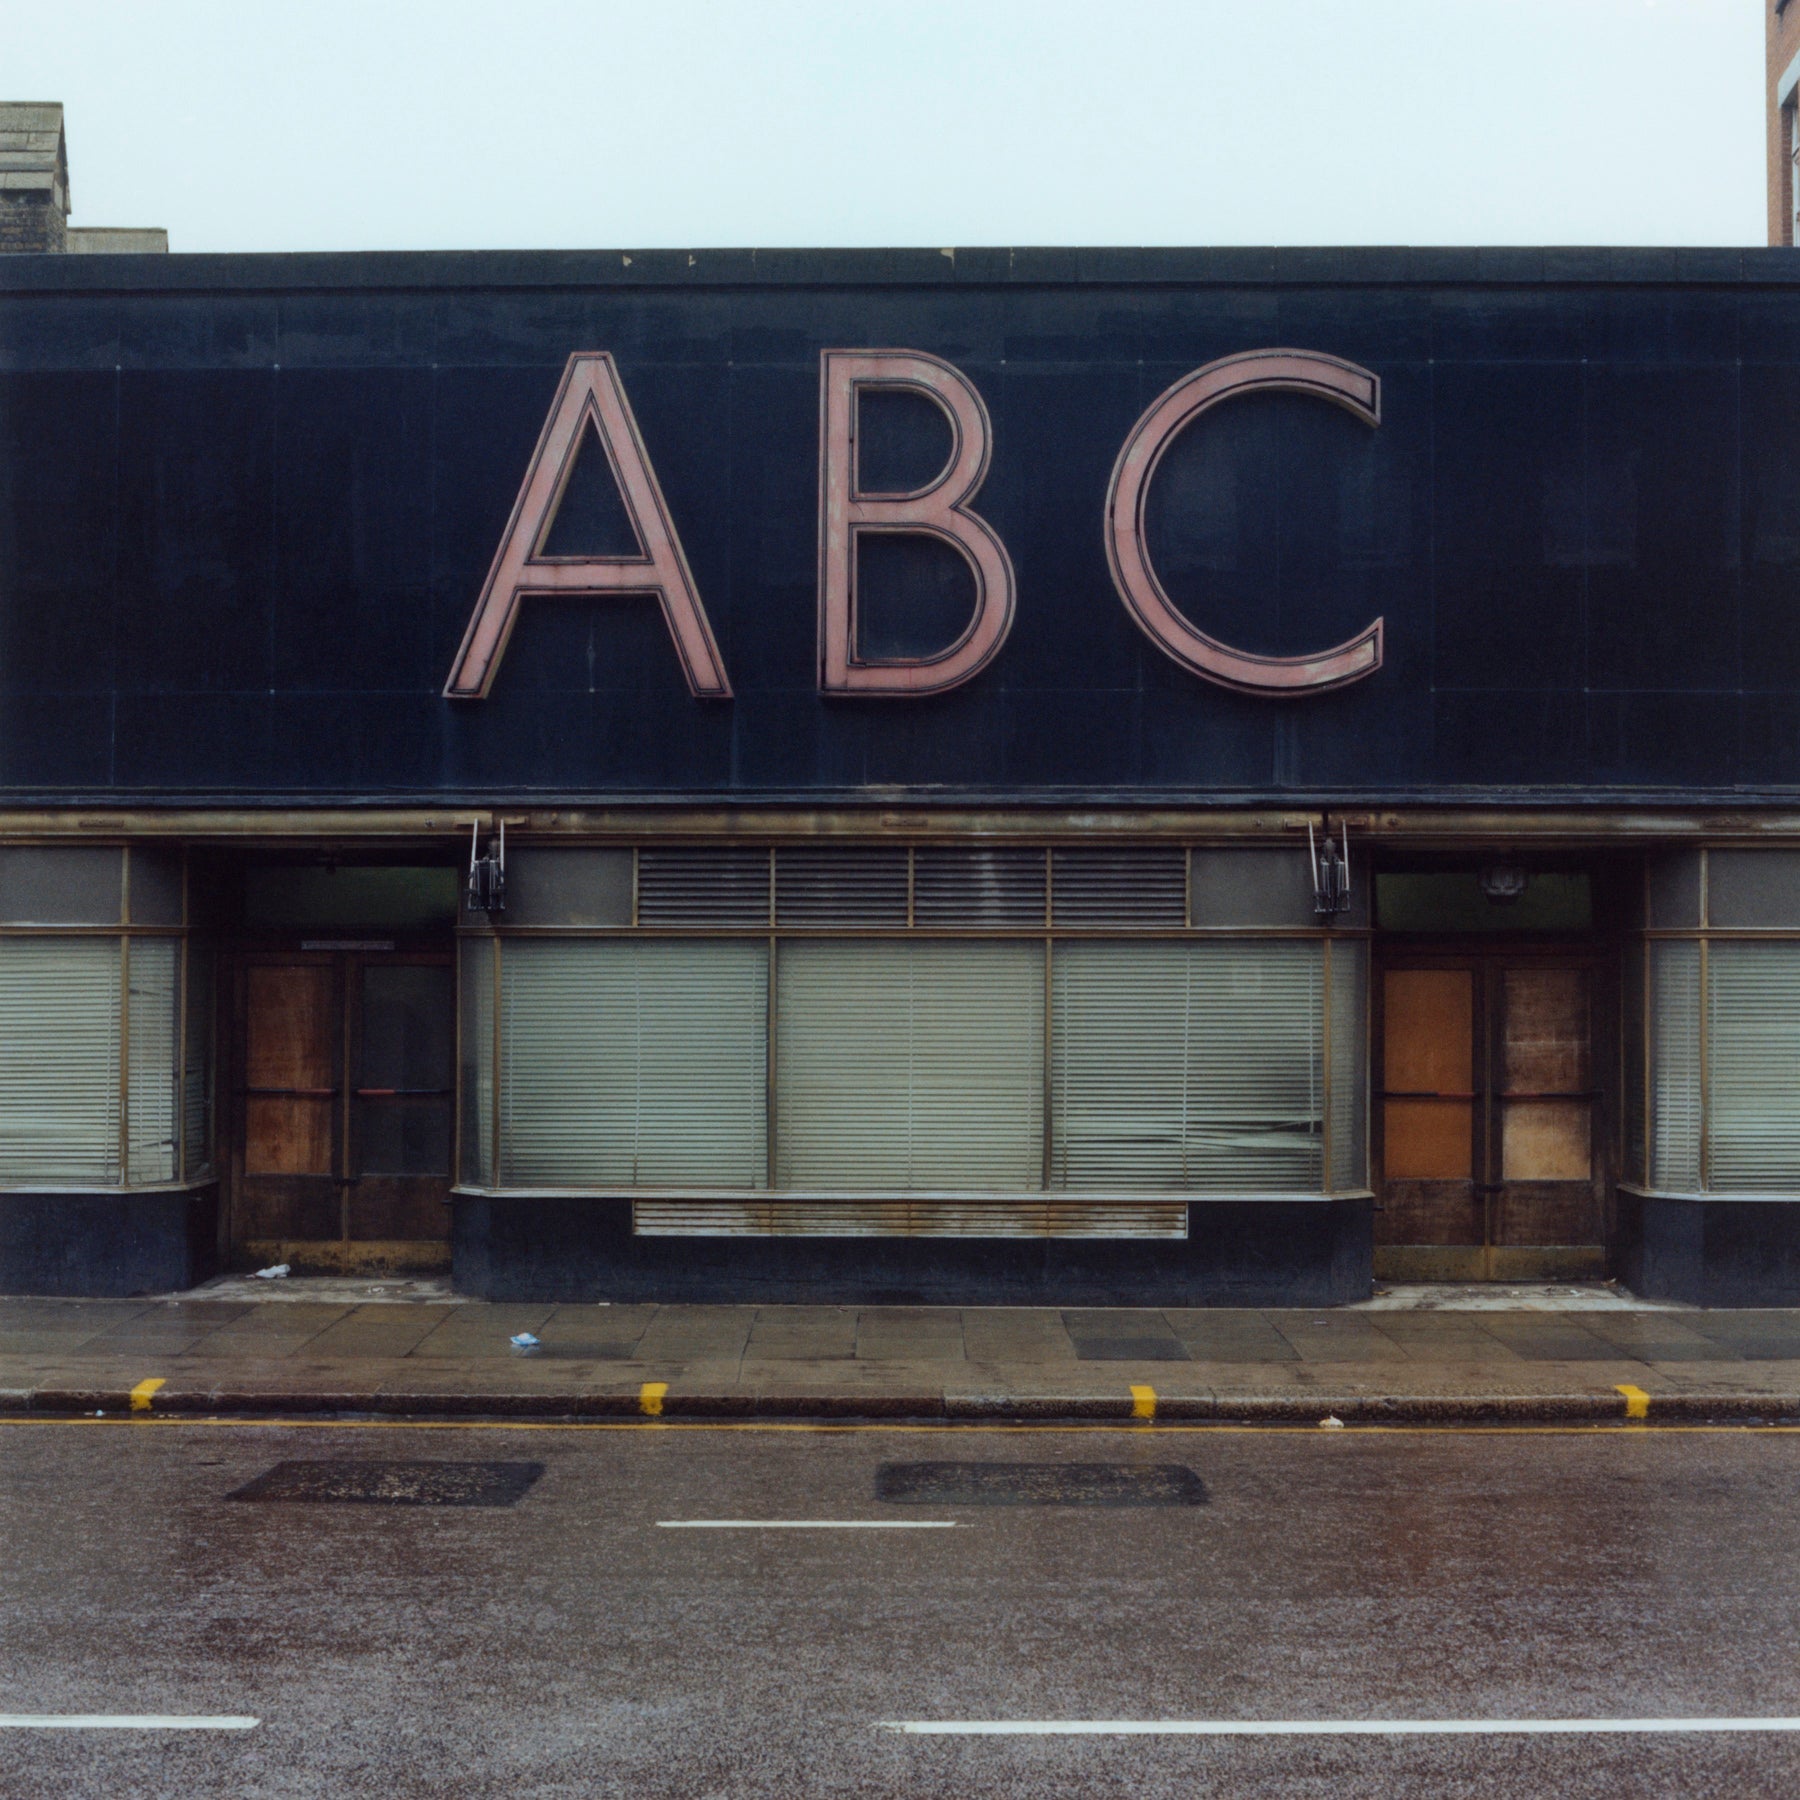 ABC (Aerated Bread Company), Camden Road, London, 1979 - 7x9" Print